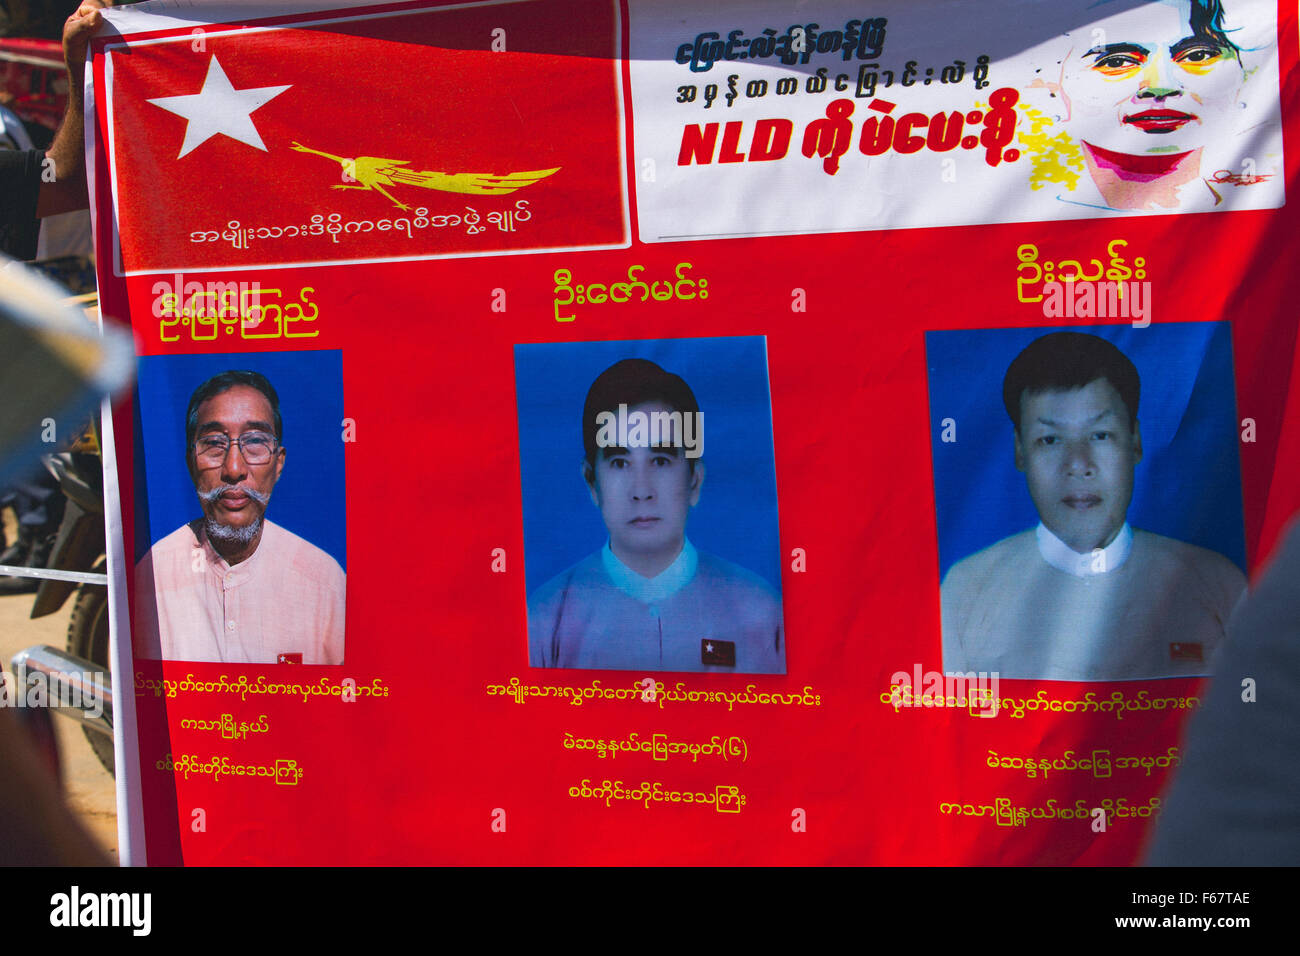 NLD cartellone elettorale candidati Foto Stock